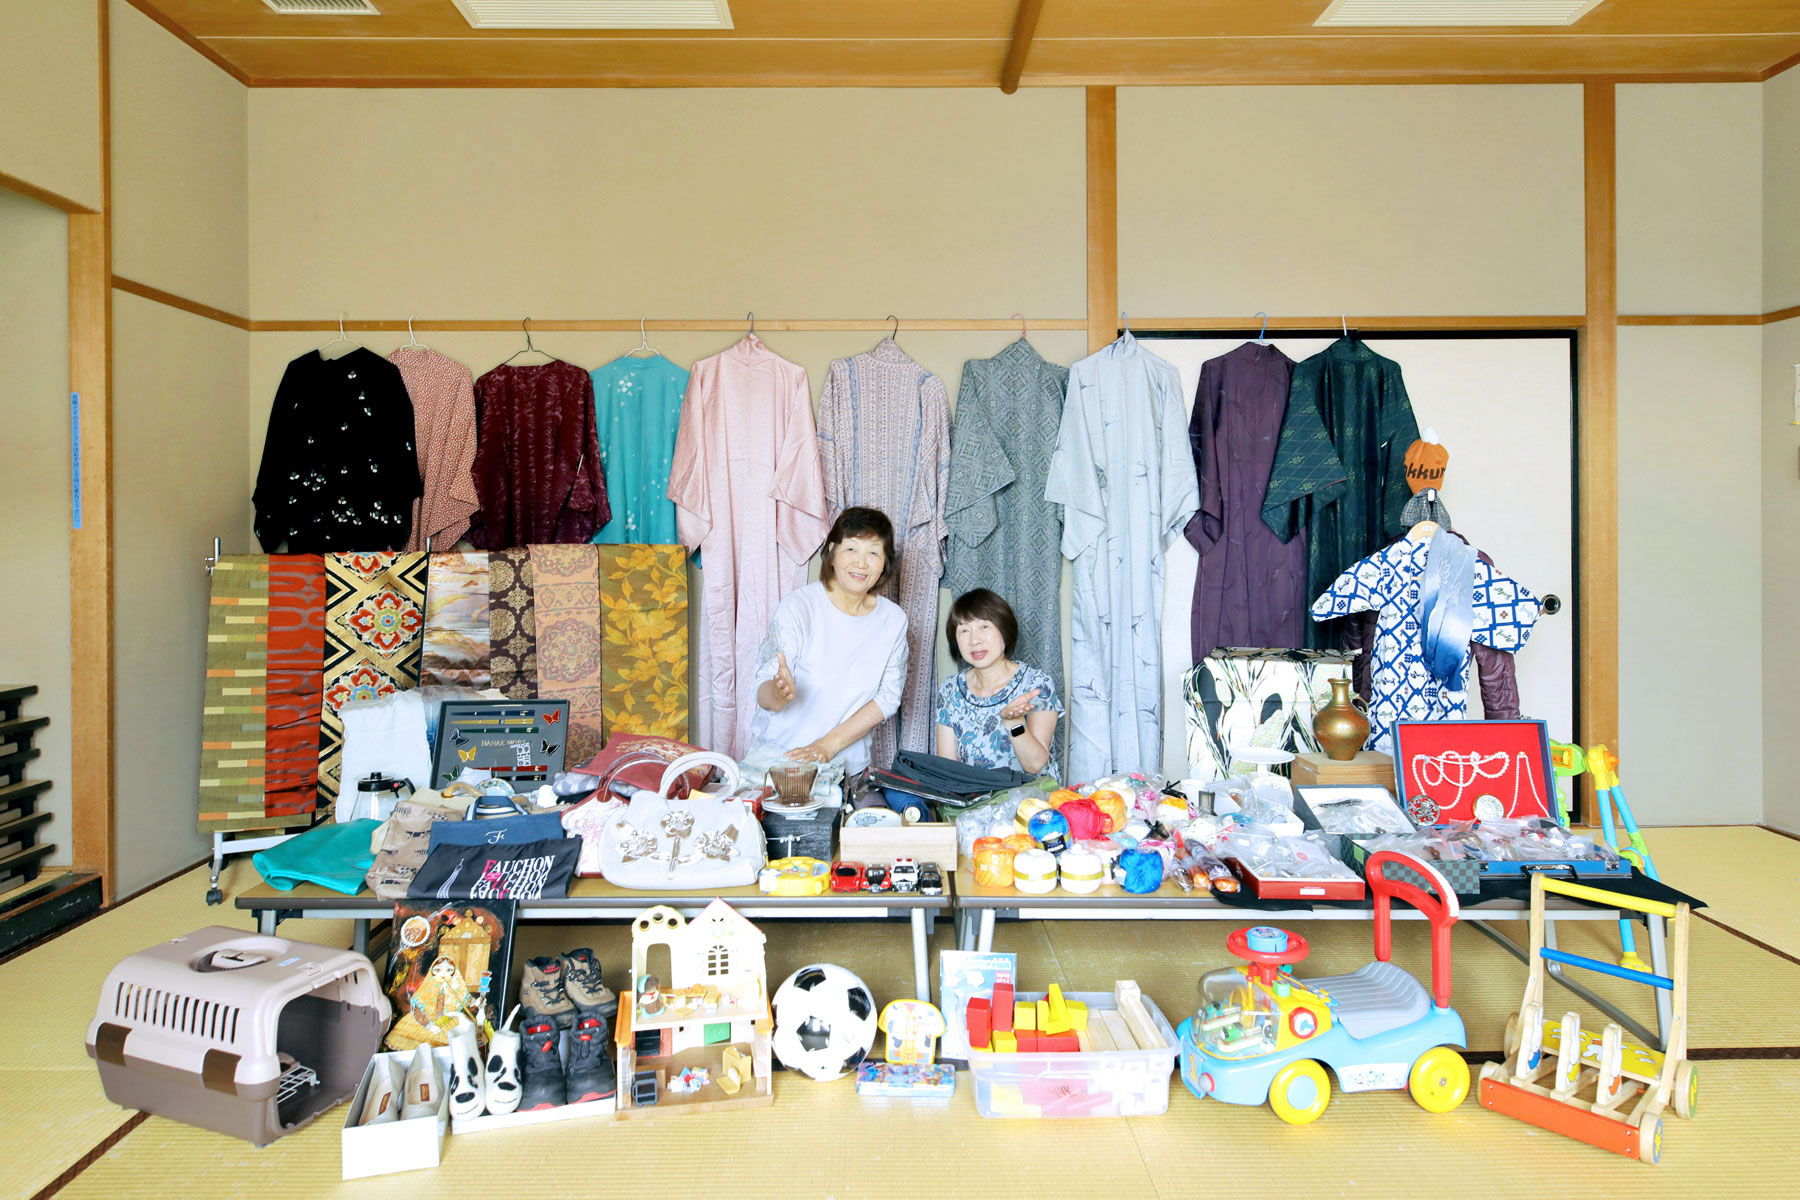 広めの和室に色とりどりの着物と雑貨、子ども用品が並んでいる。そのブースの中央に二人の女性がポーズをとって写っている。